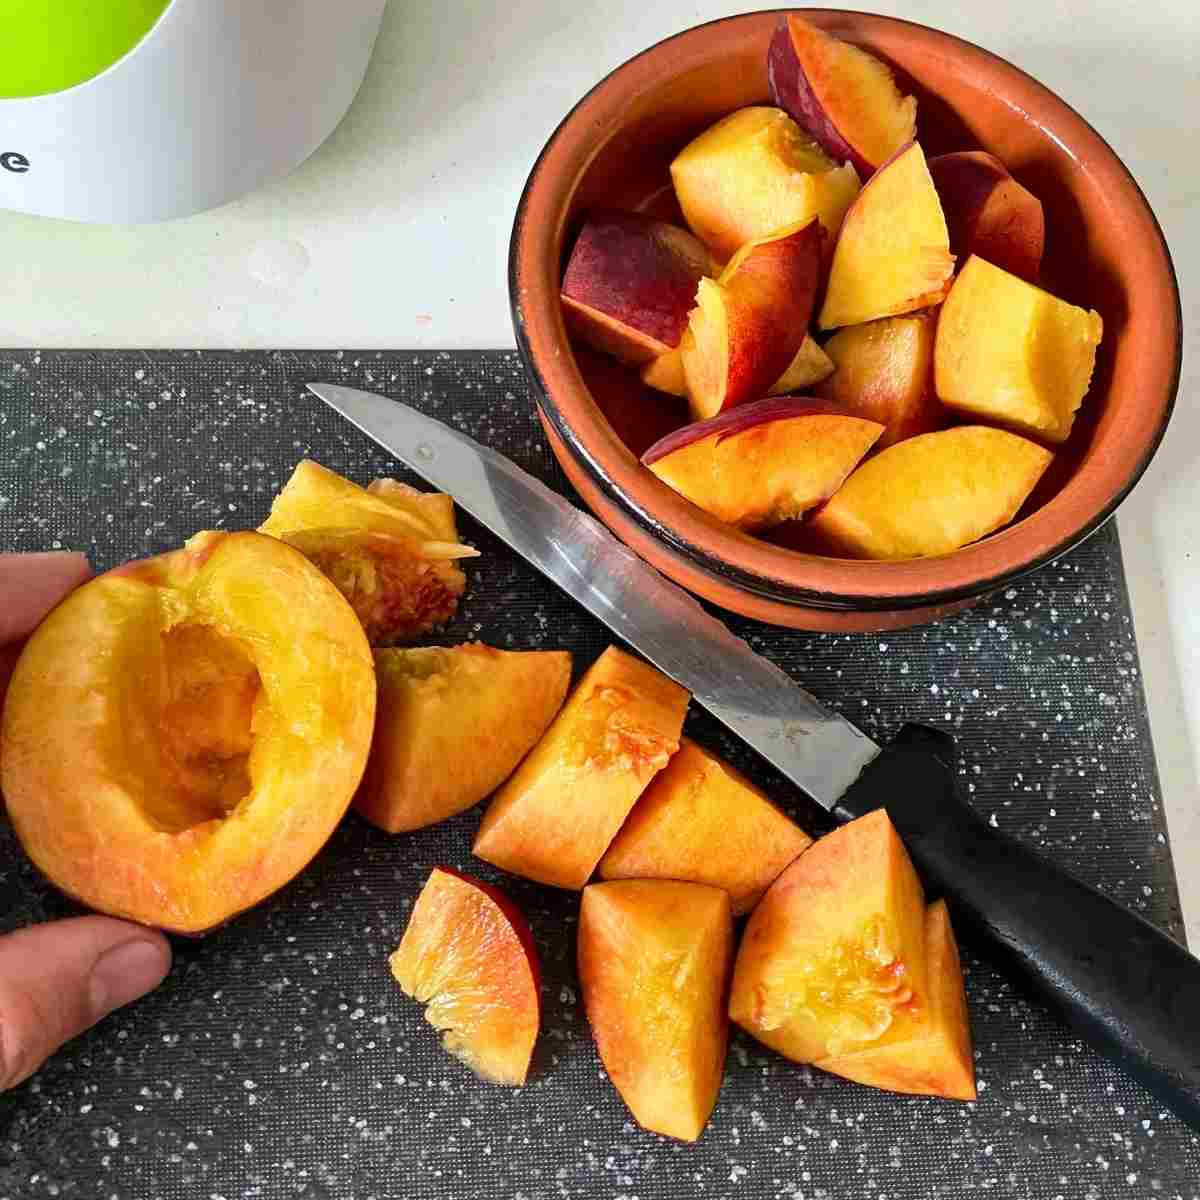 cut peaches into cubes